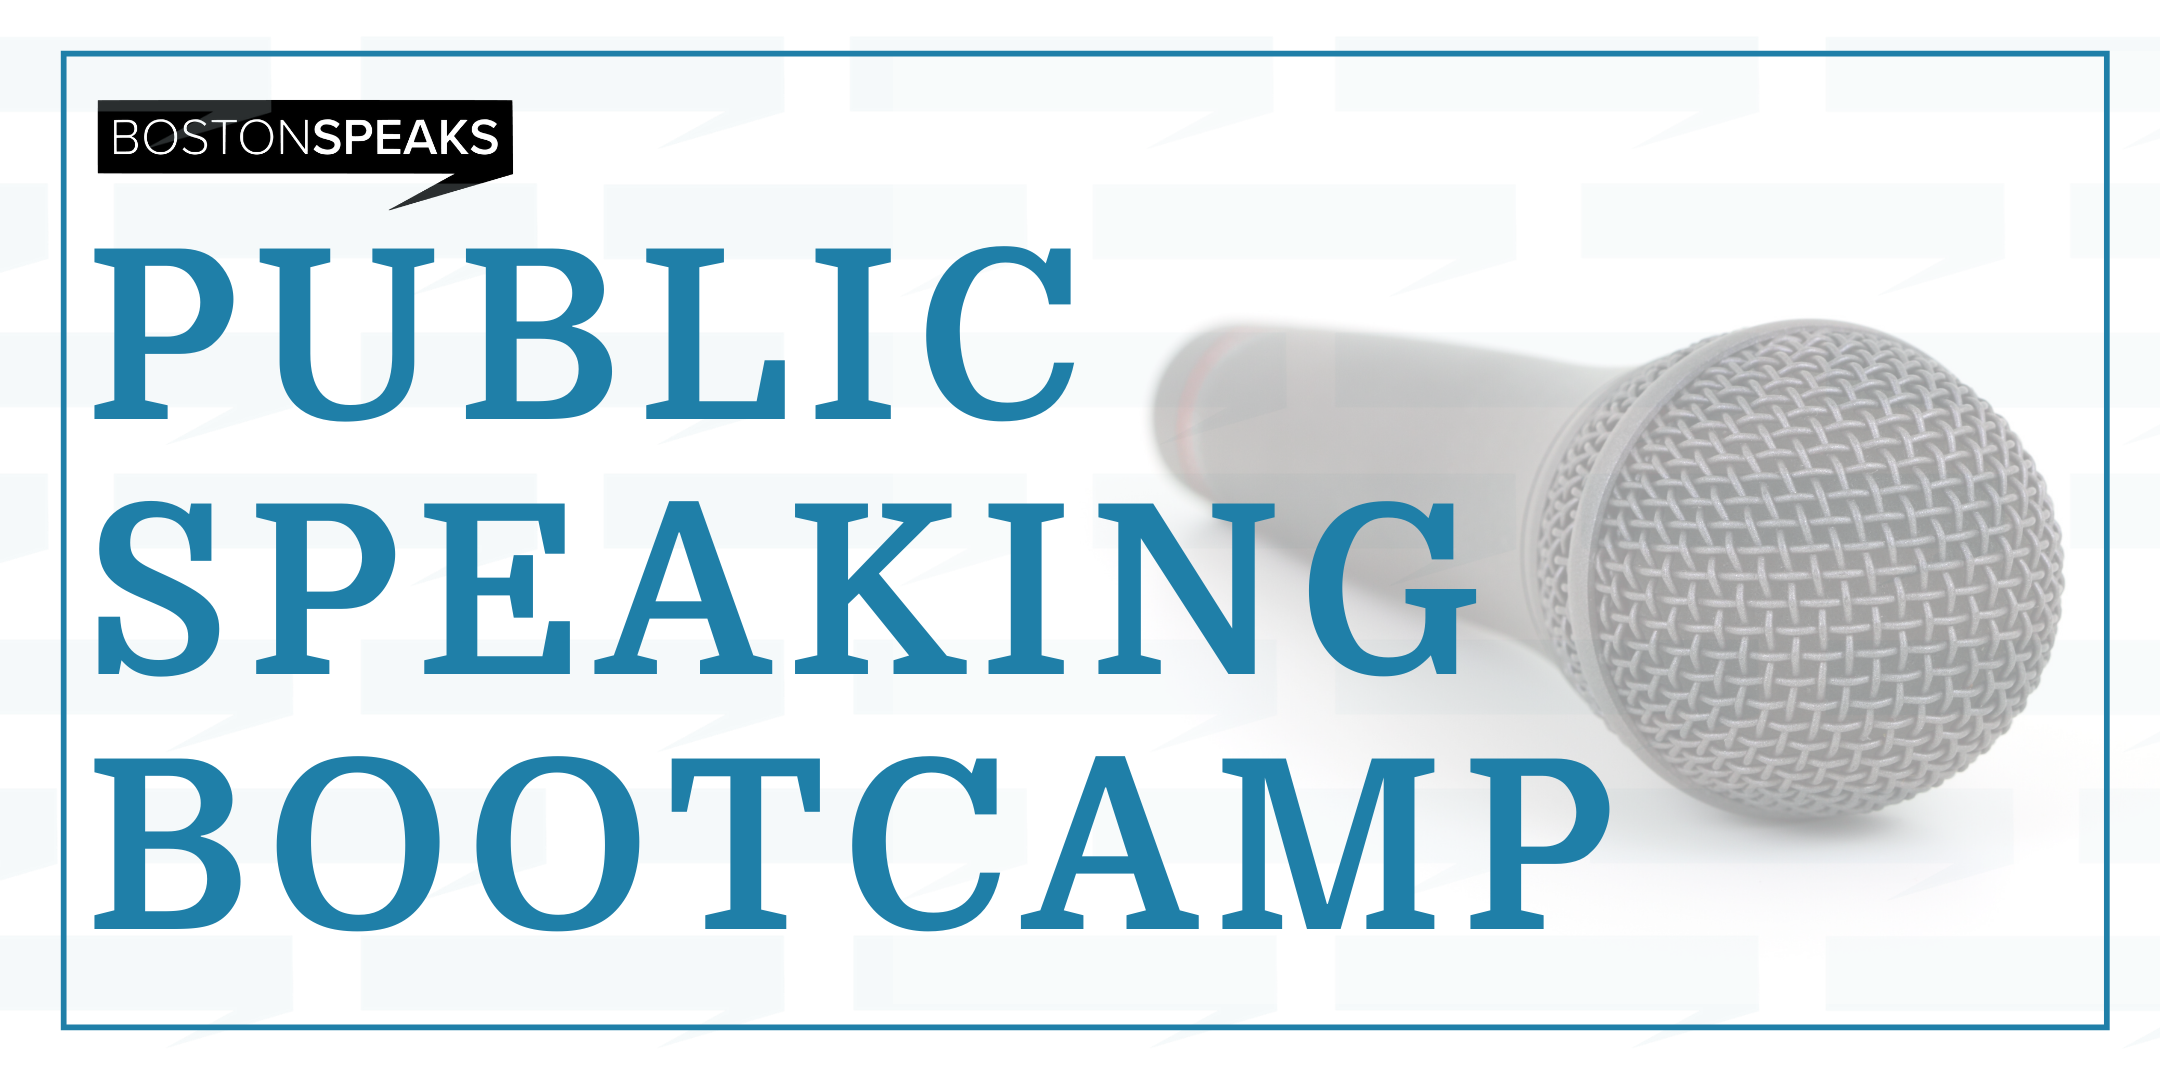 SPEAK - Public Speaking Bootcamp